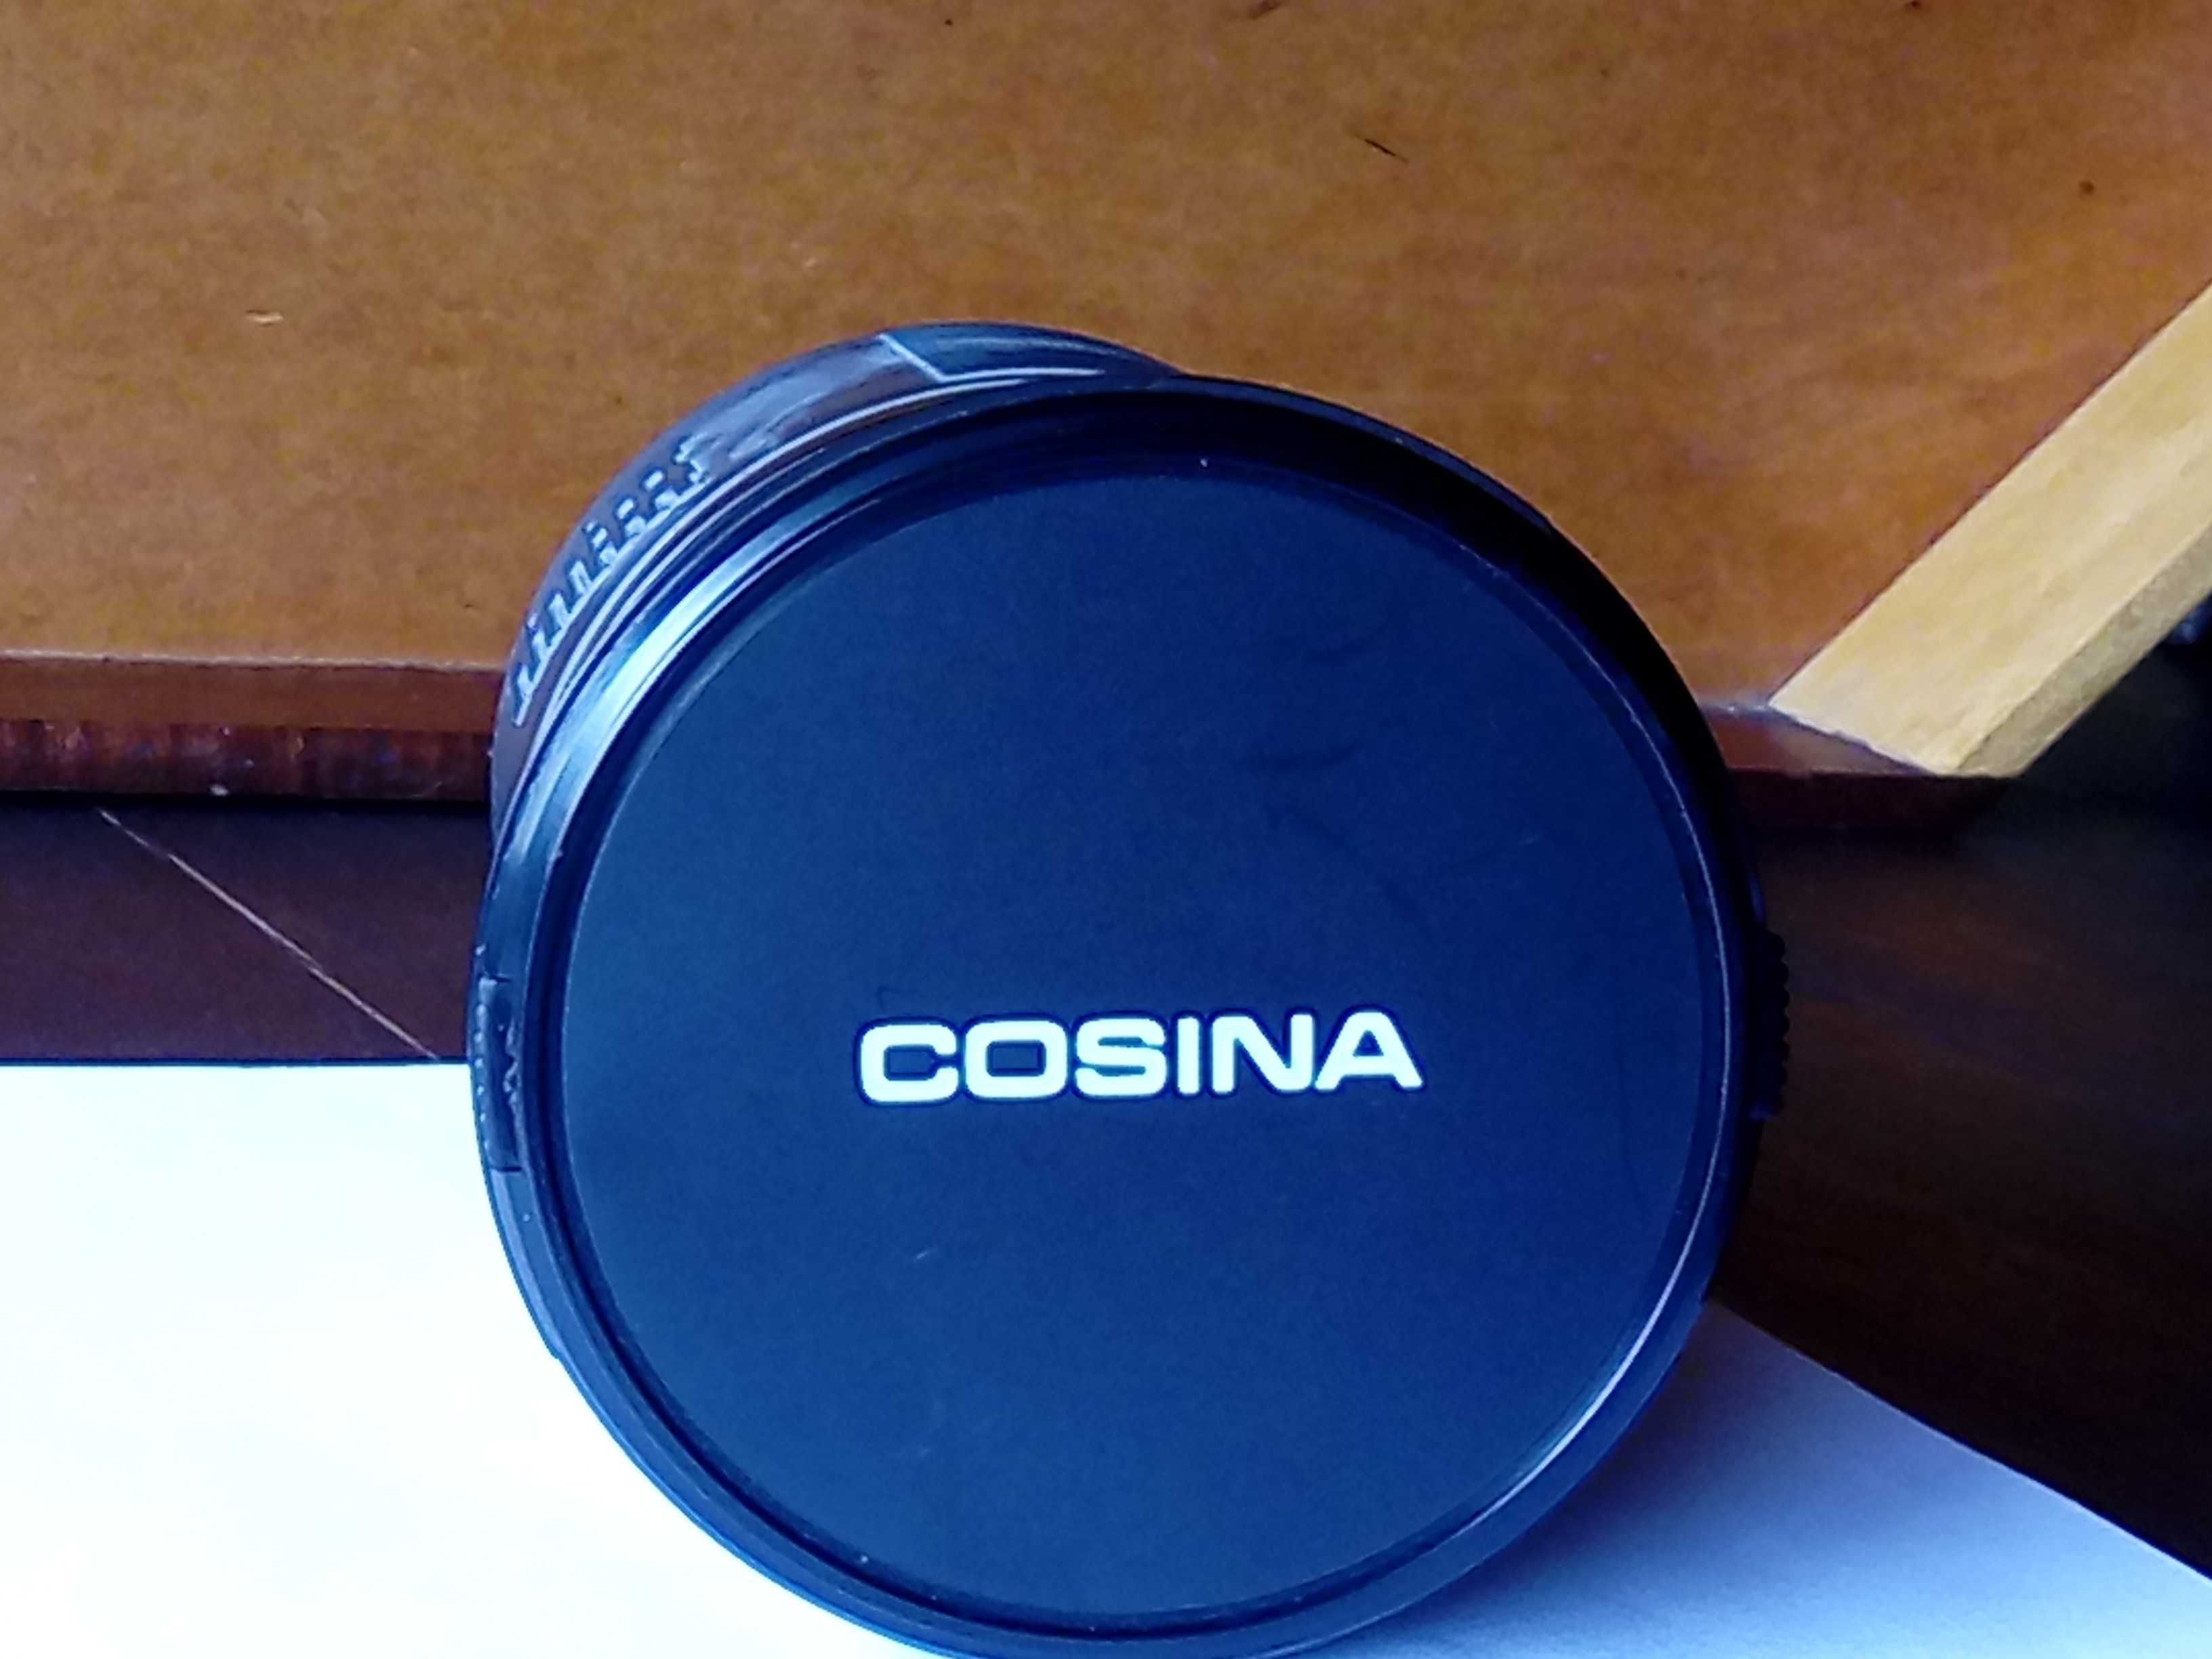 Tele objectiva marca Cosina